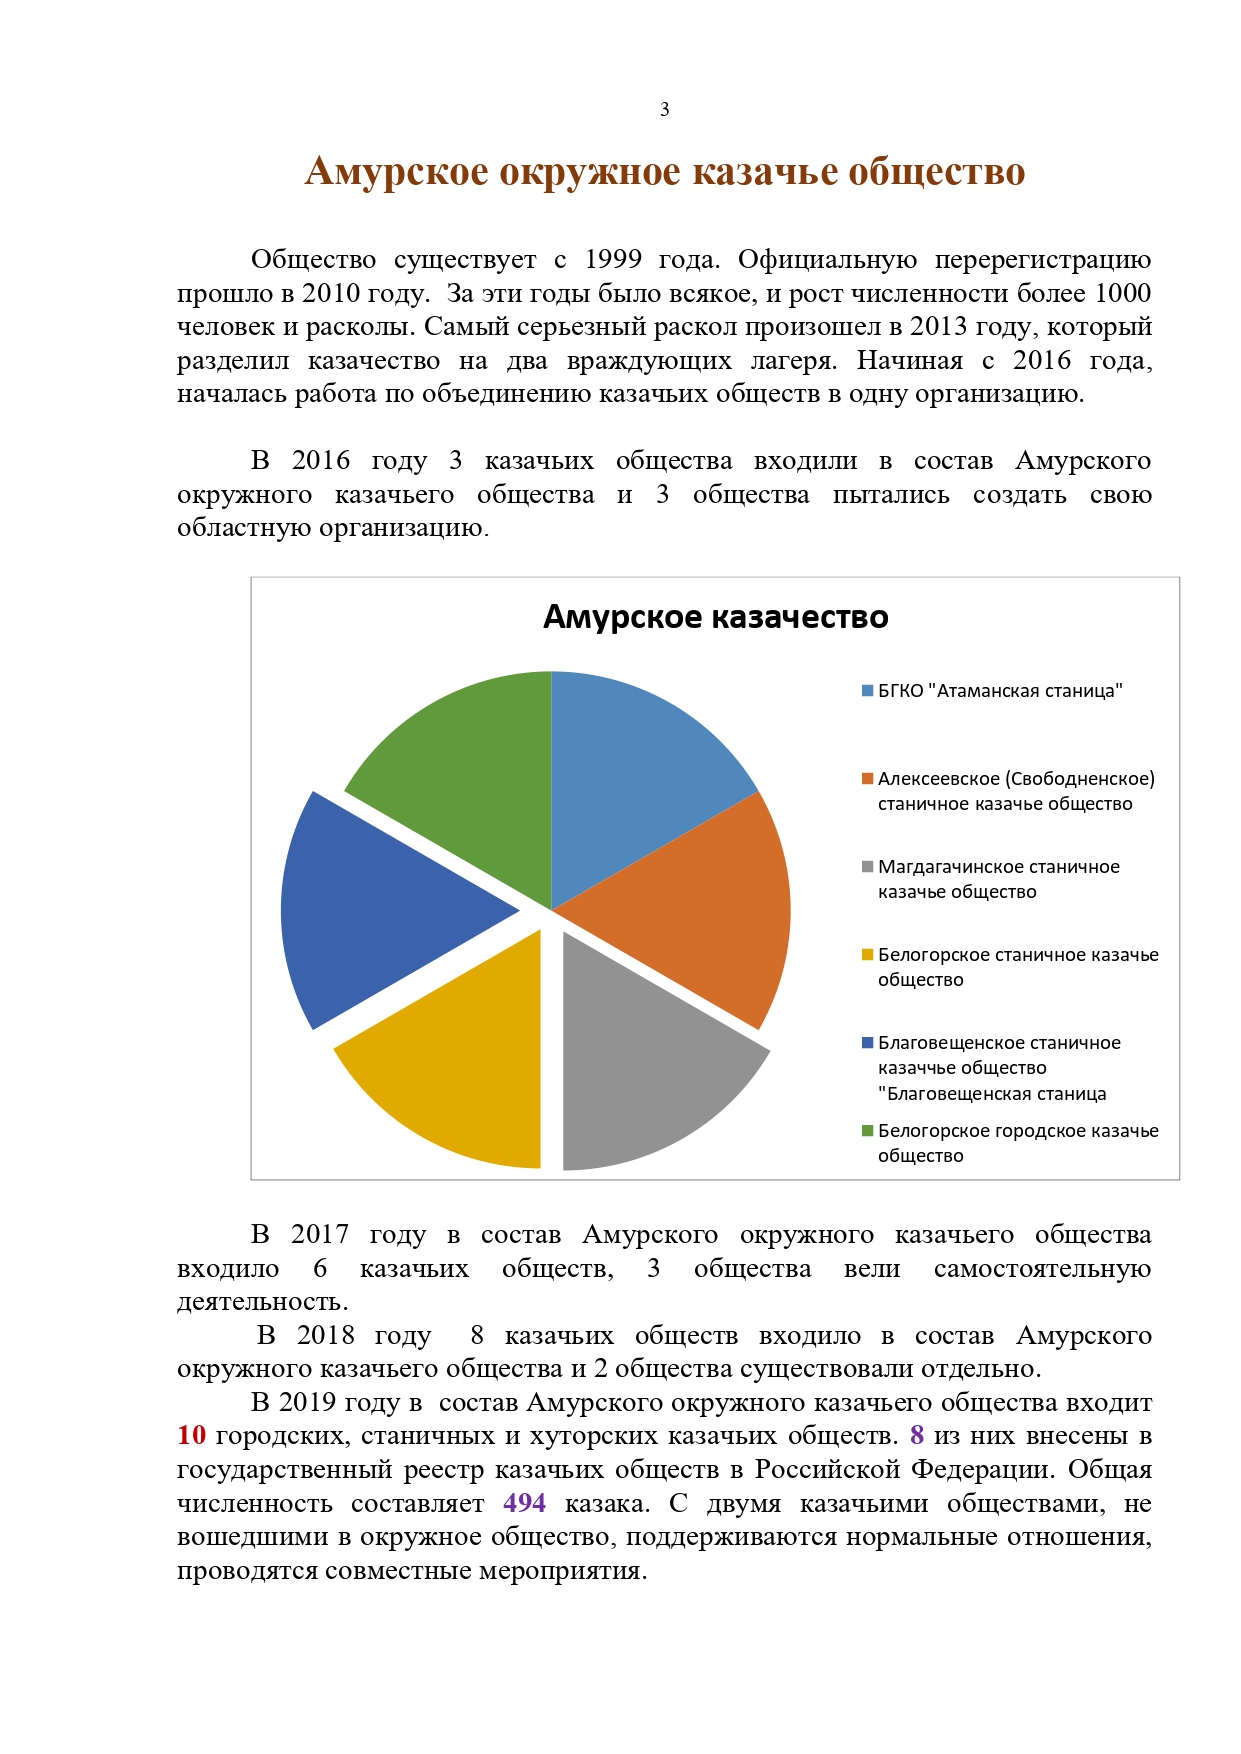 Публичный годовой отчет Амурского окружного казачьего общества за 2019 год Page 0003